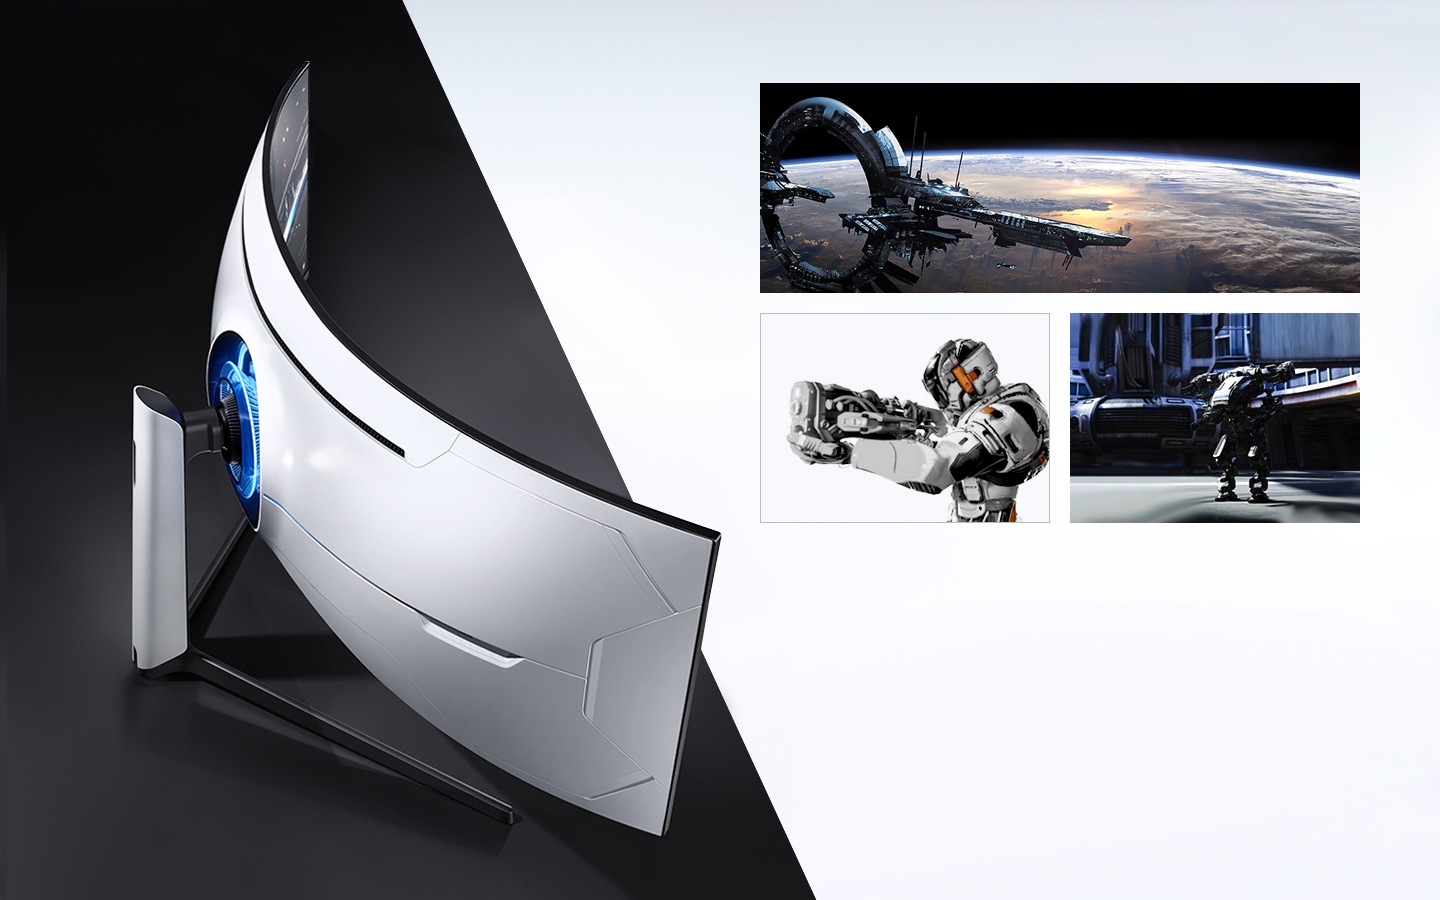 El modelo CTG9 está sobre el escritorio y muestra imágenes de ciencia ficción (nave espacial, soldados robot, etc).